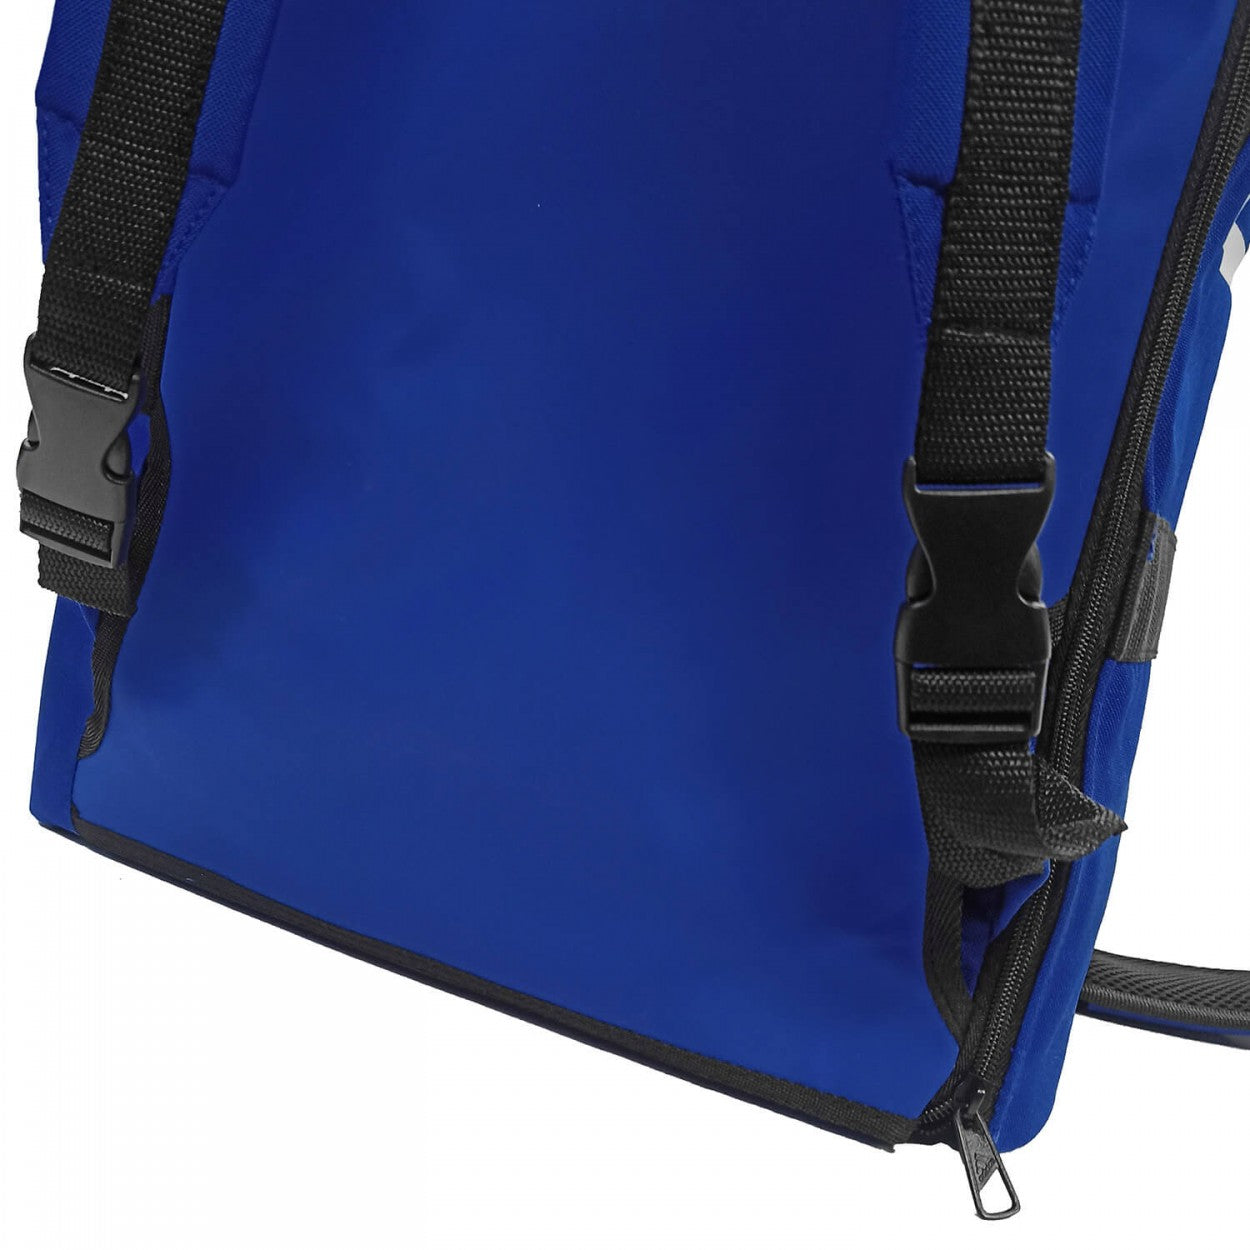 Αθλητική Τσάντα adidas UNIFORM Τσάντα 2 σε 1, Μπλε